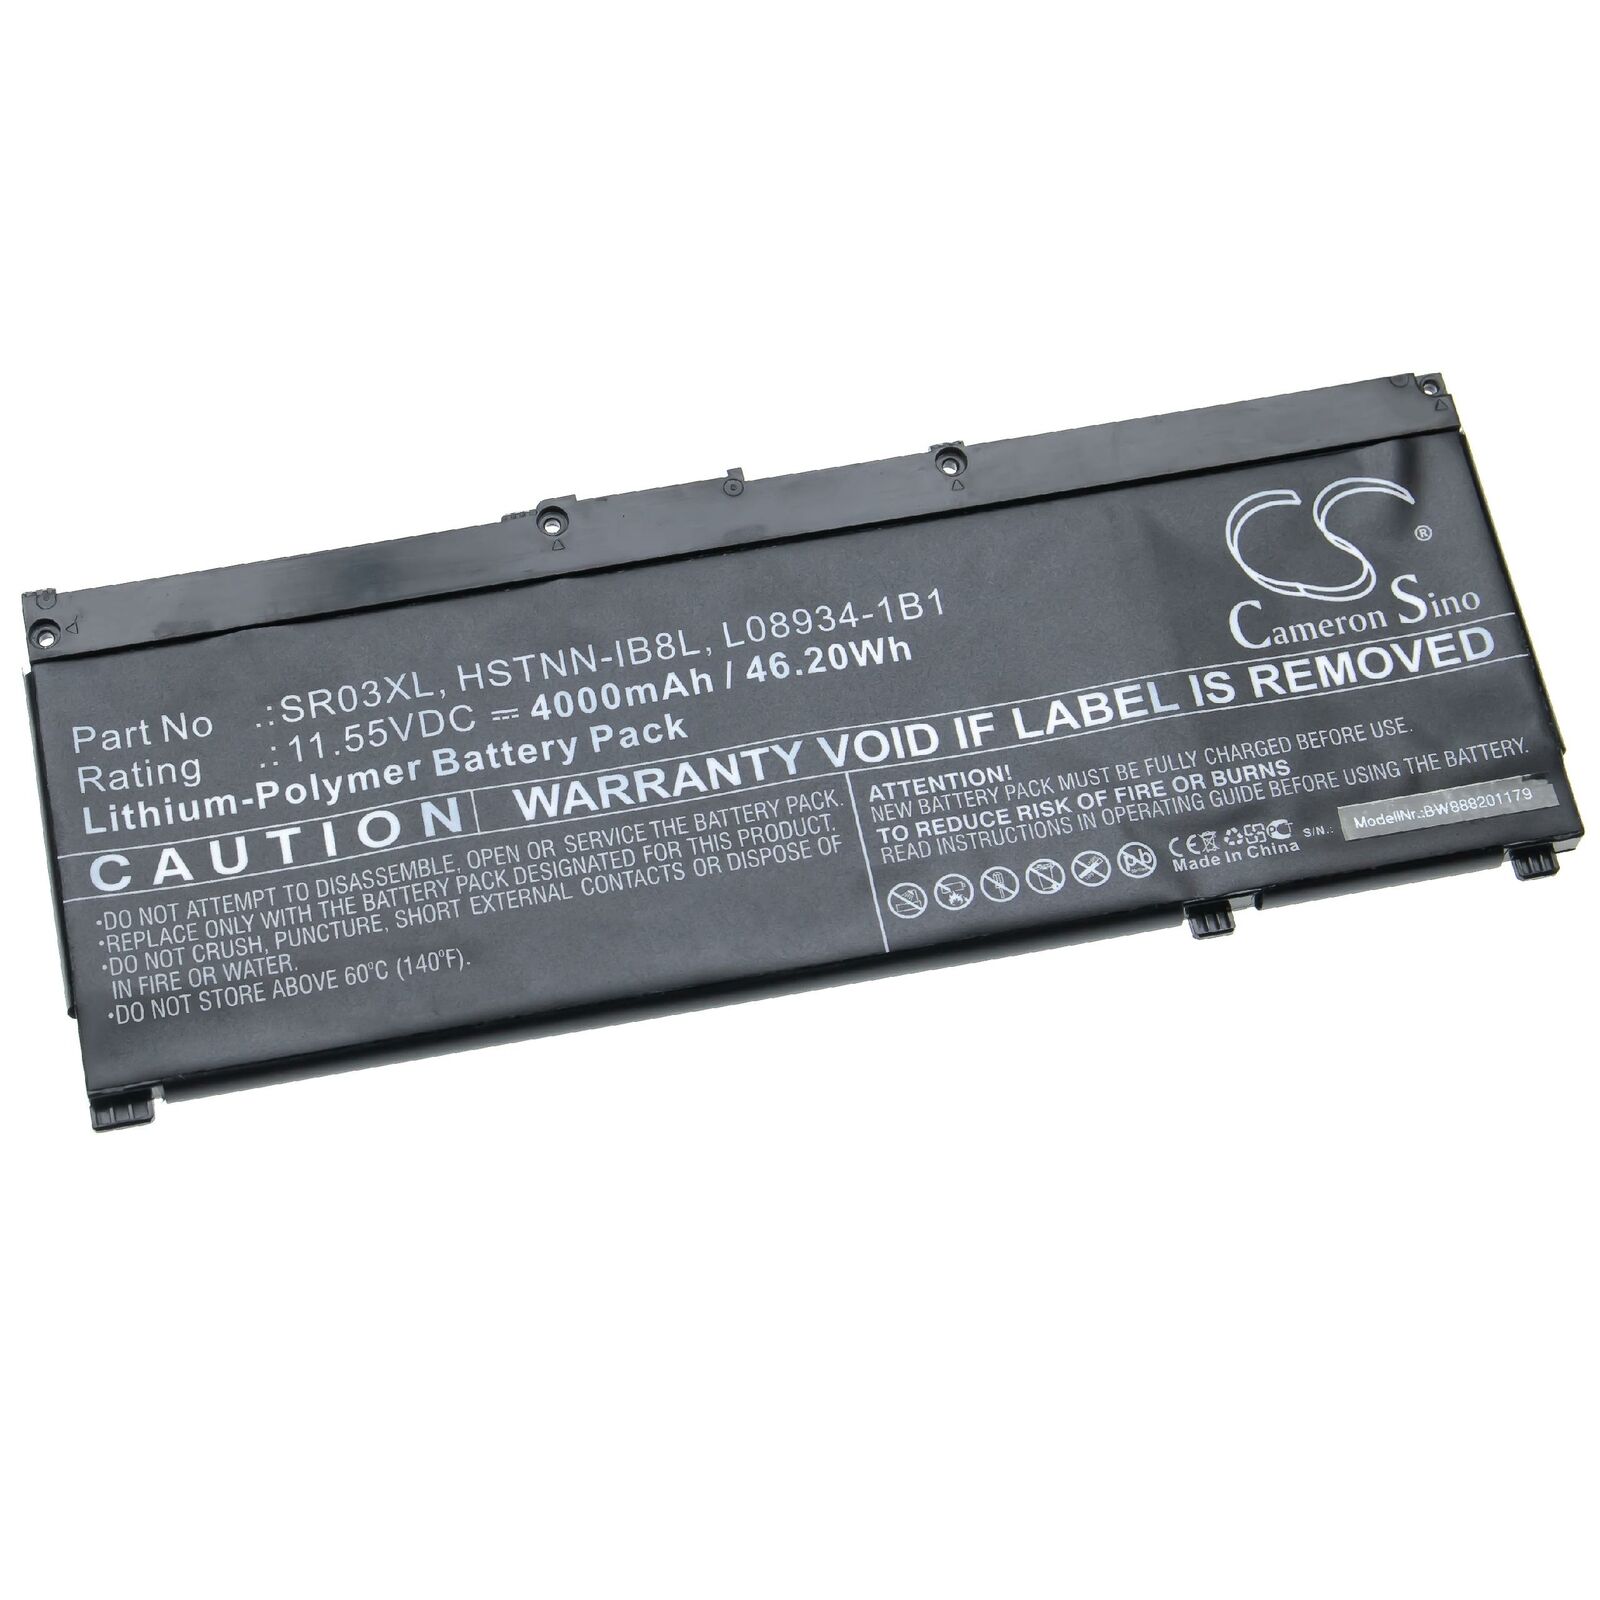 Batería para HP 11.55V HSTNN-IB8L, L08855-855, L08934-1B1, SR03XL (compatible)